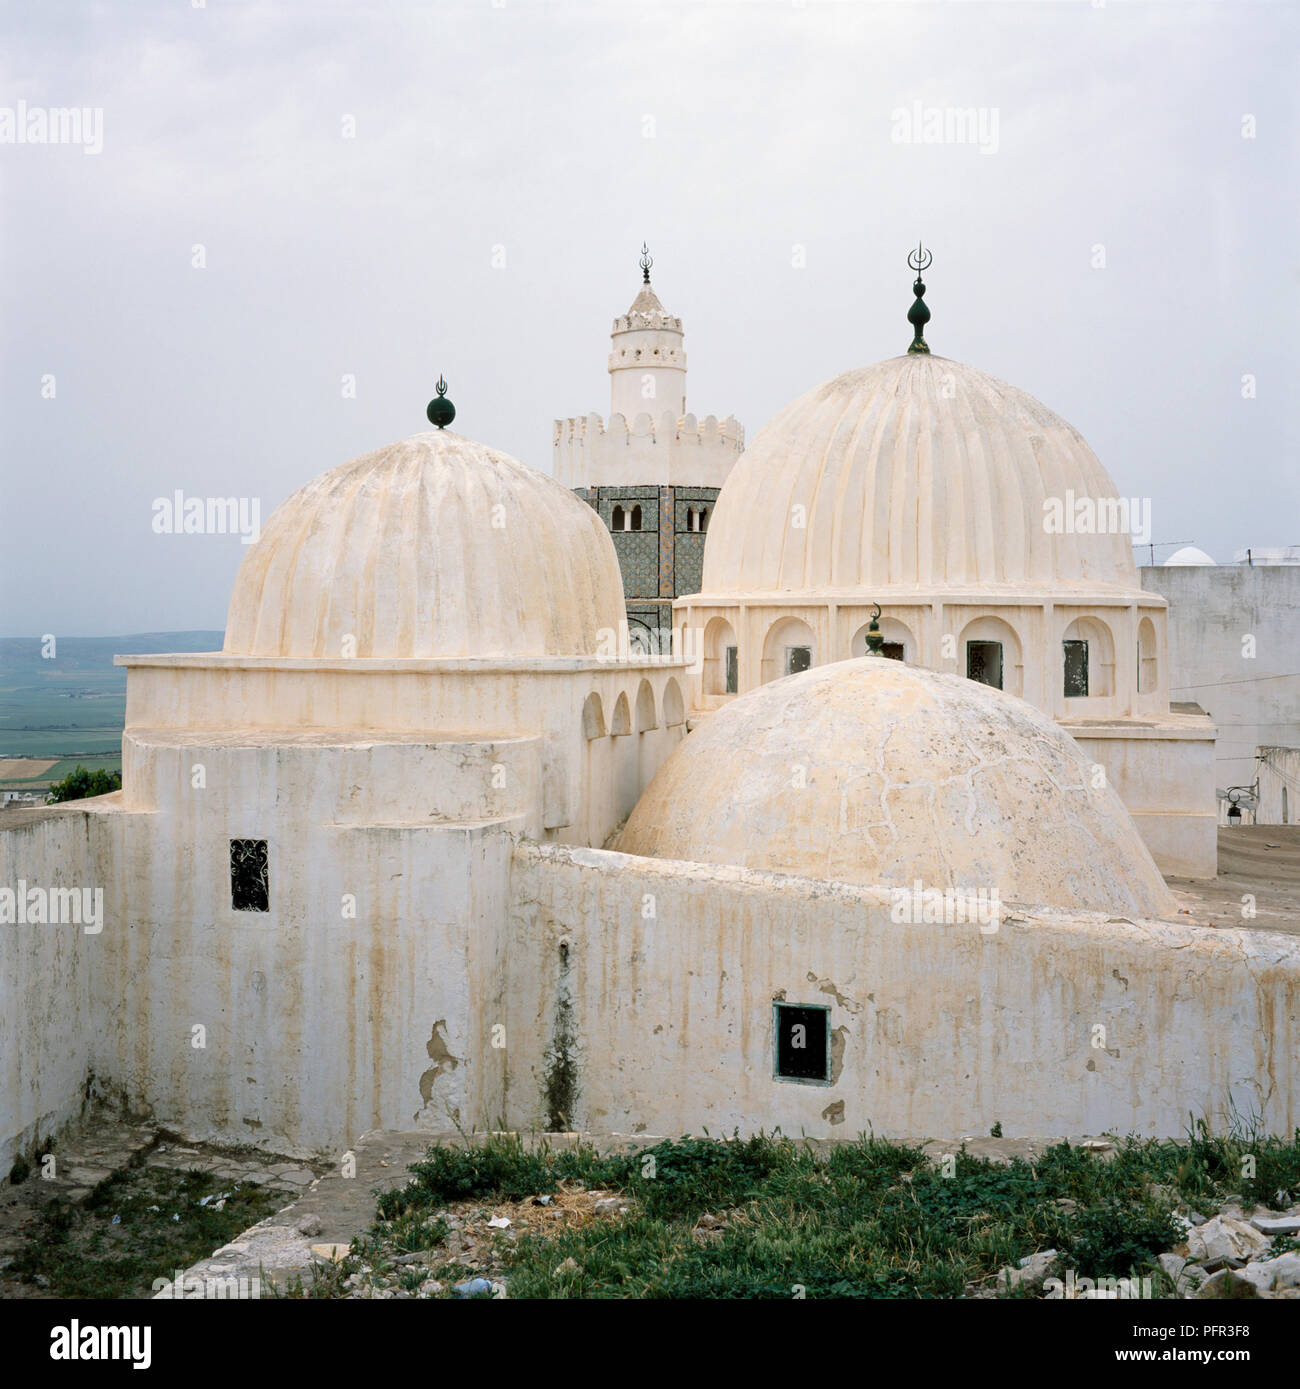 La Tunisie, Le Kef, Zaouia de Sidi Bou Makhlouf, 17ème siècle avec ses deux coupoles côtelées tombeau, mosquée et minaret octogonal, extérieur Banque D'Images